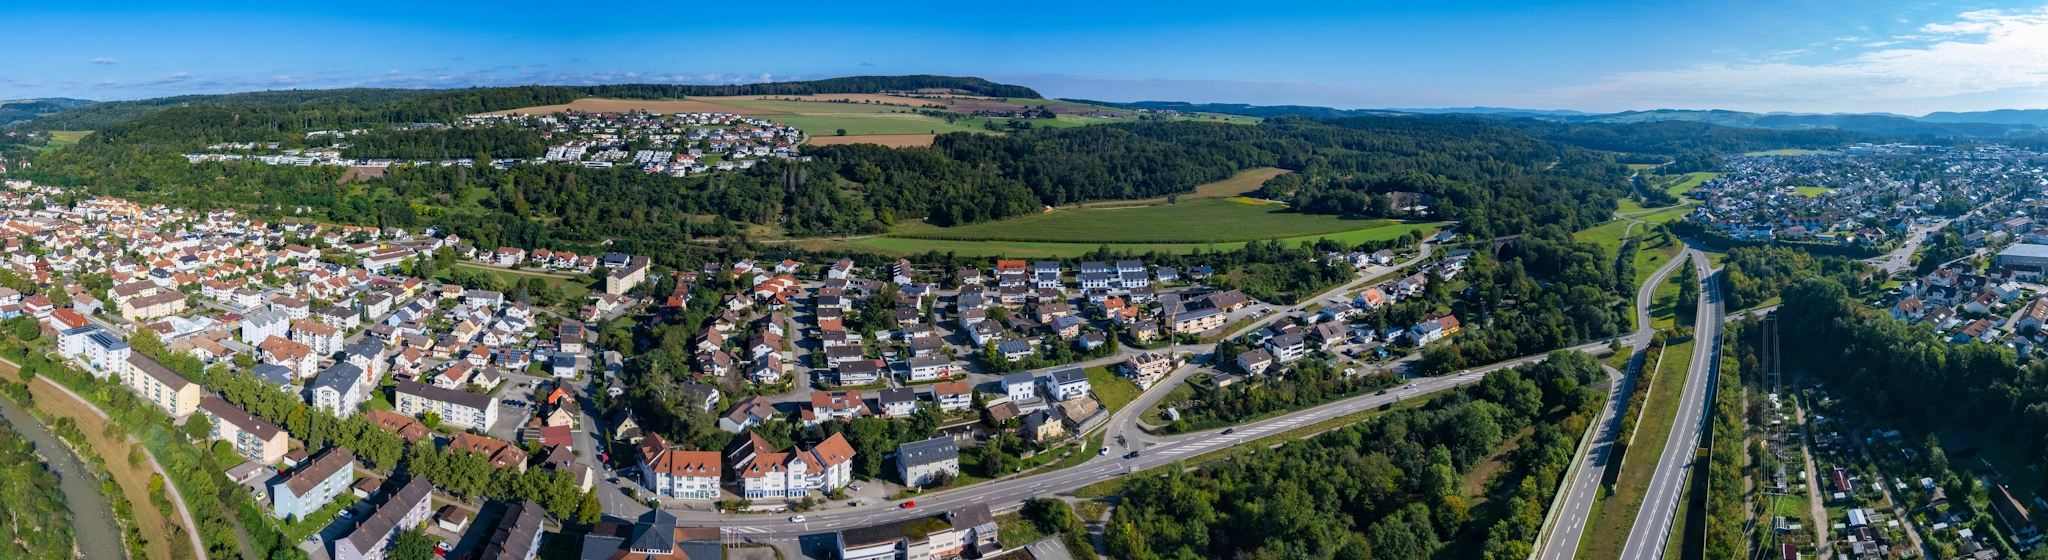 Ihr Immobilienmakler in Waldshut » GARANT Immobilien